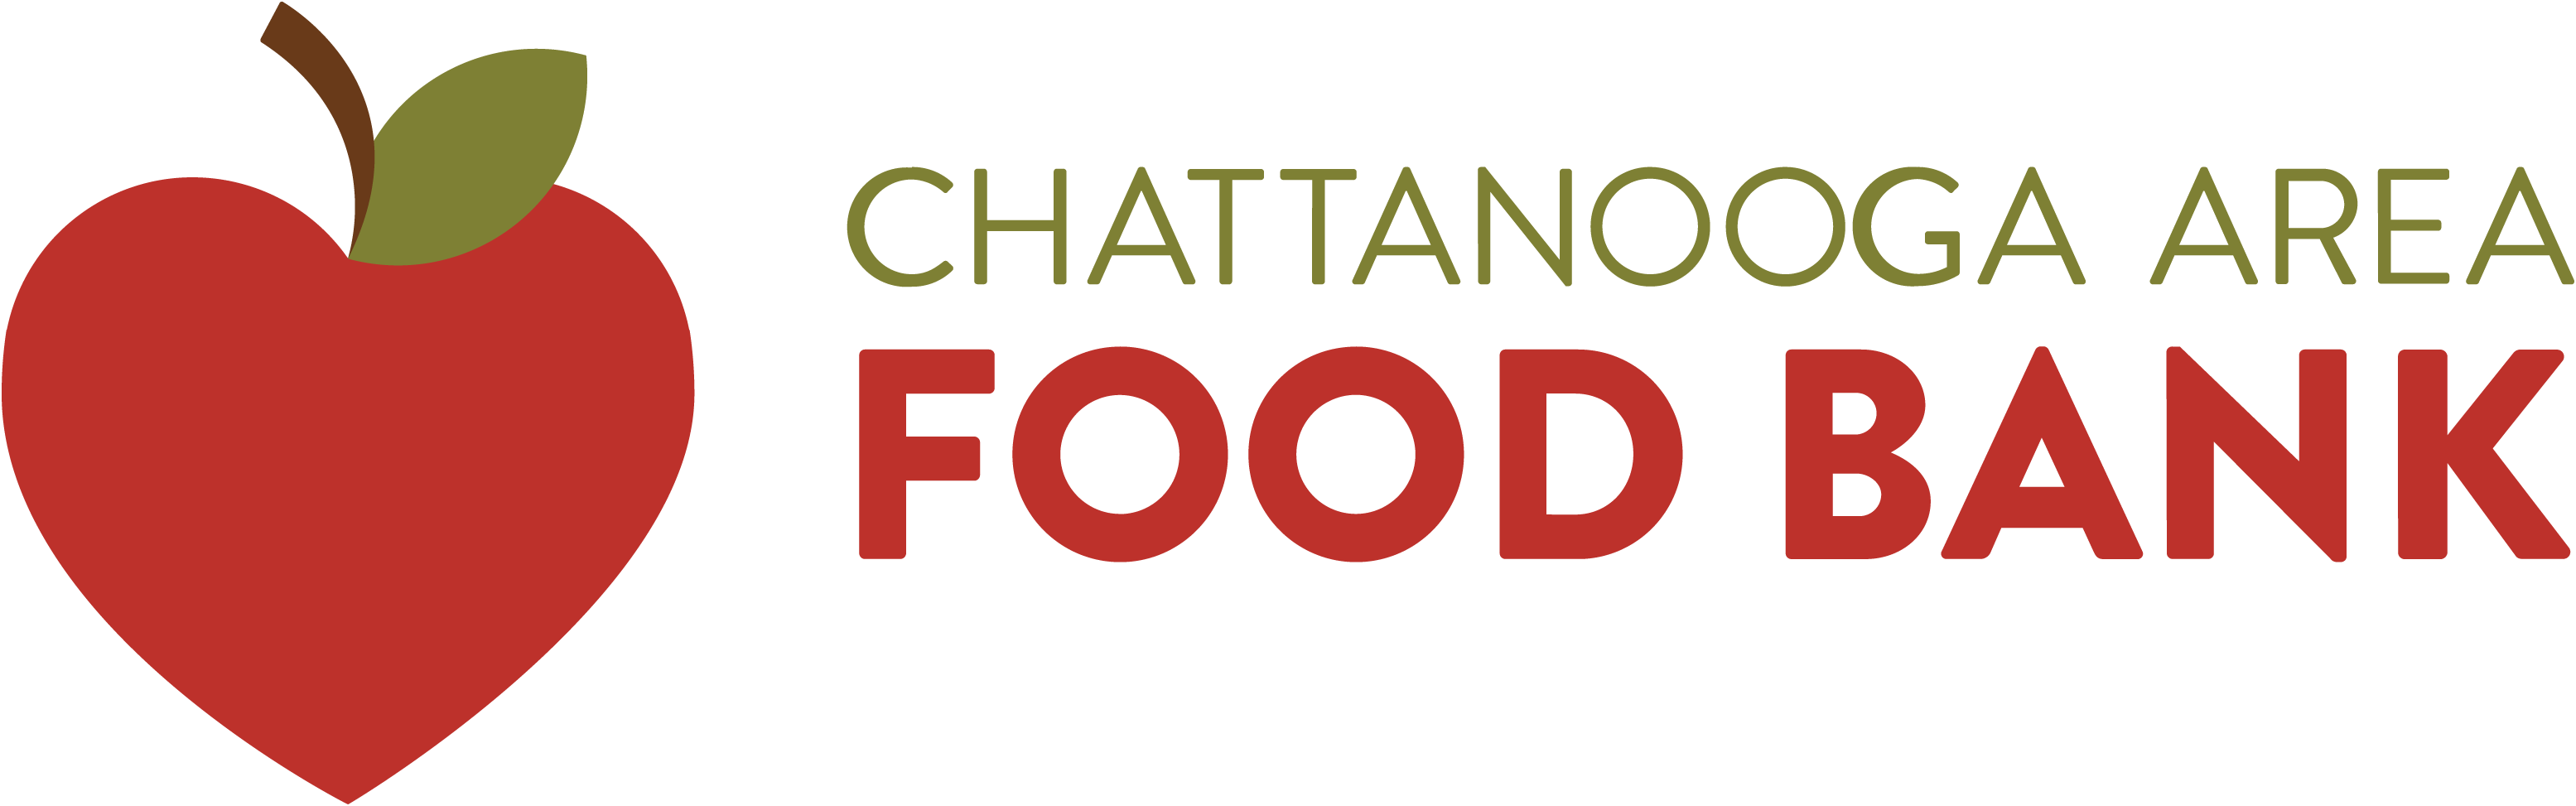 Chattanooga Area Food Bank